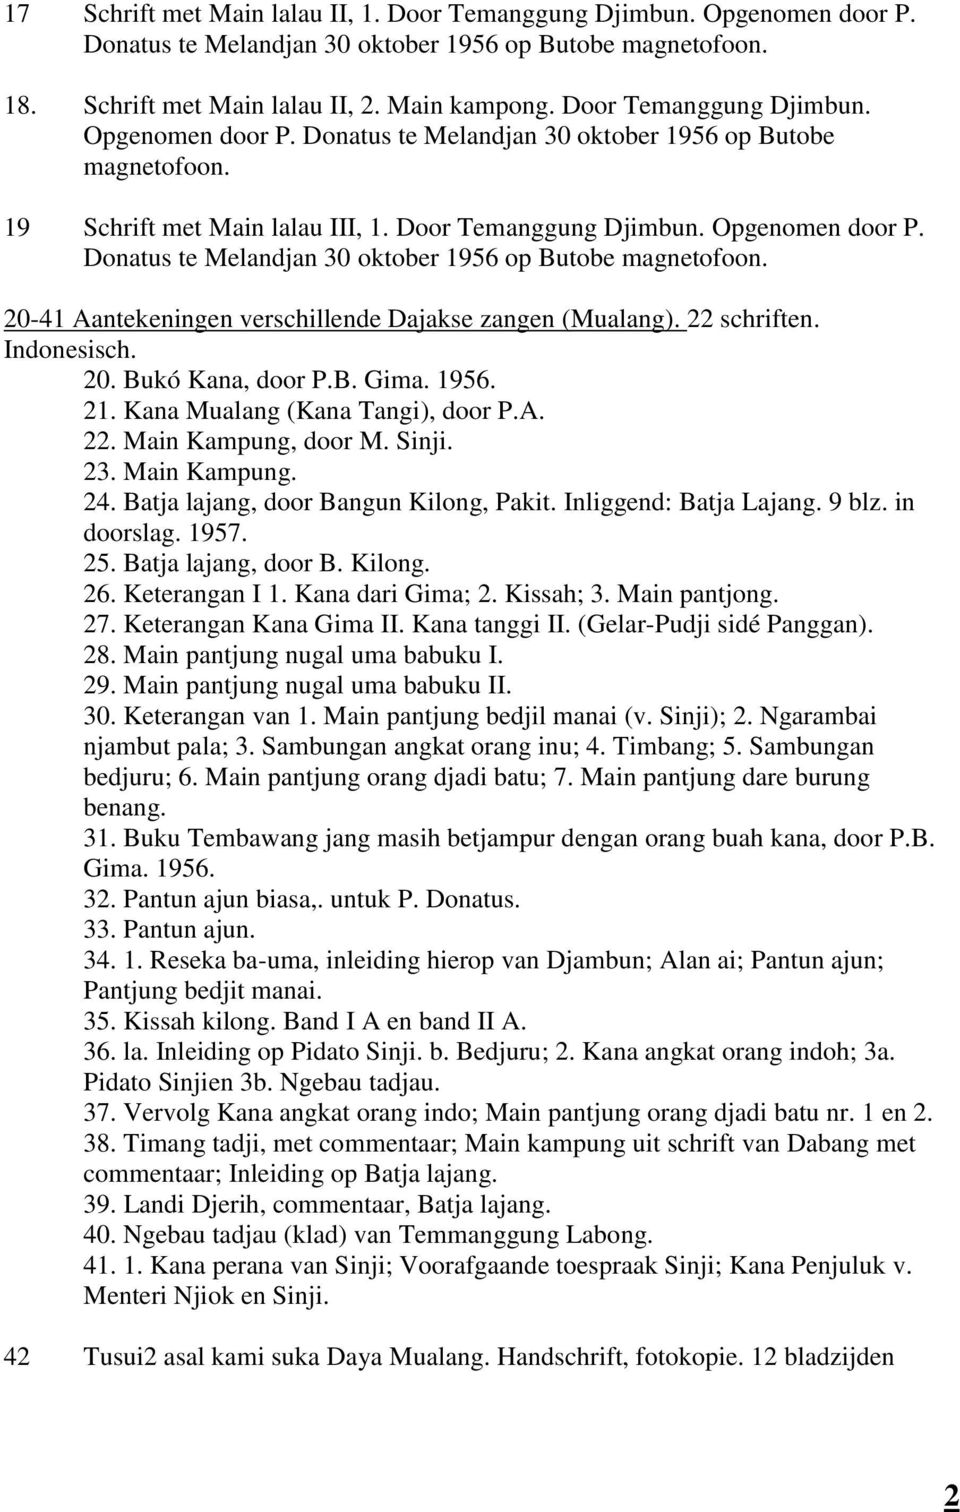 22 schriften. Indonesisch. 20. Bukó Kana, door P.B. Gima. 1956. 21. Kana Mualang (Kana Tangi), door P.A. 22. Main Kampung, door M. Sinji. 23. Main Kampung. 24. Batja lajang, door Bangun Kilong, Pakit.